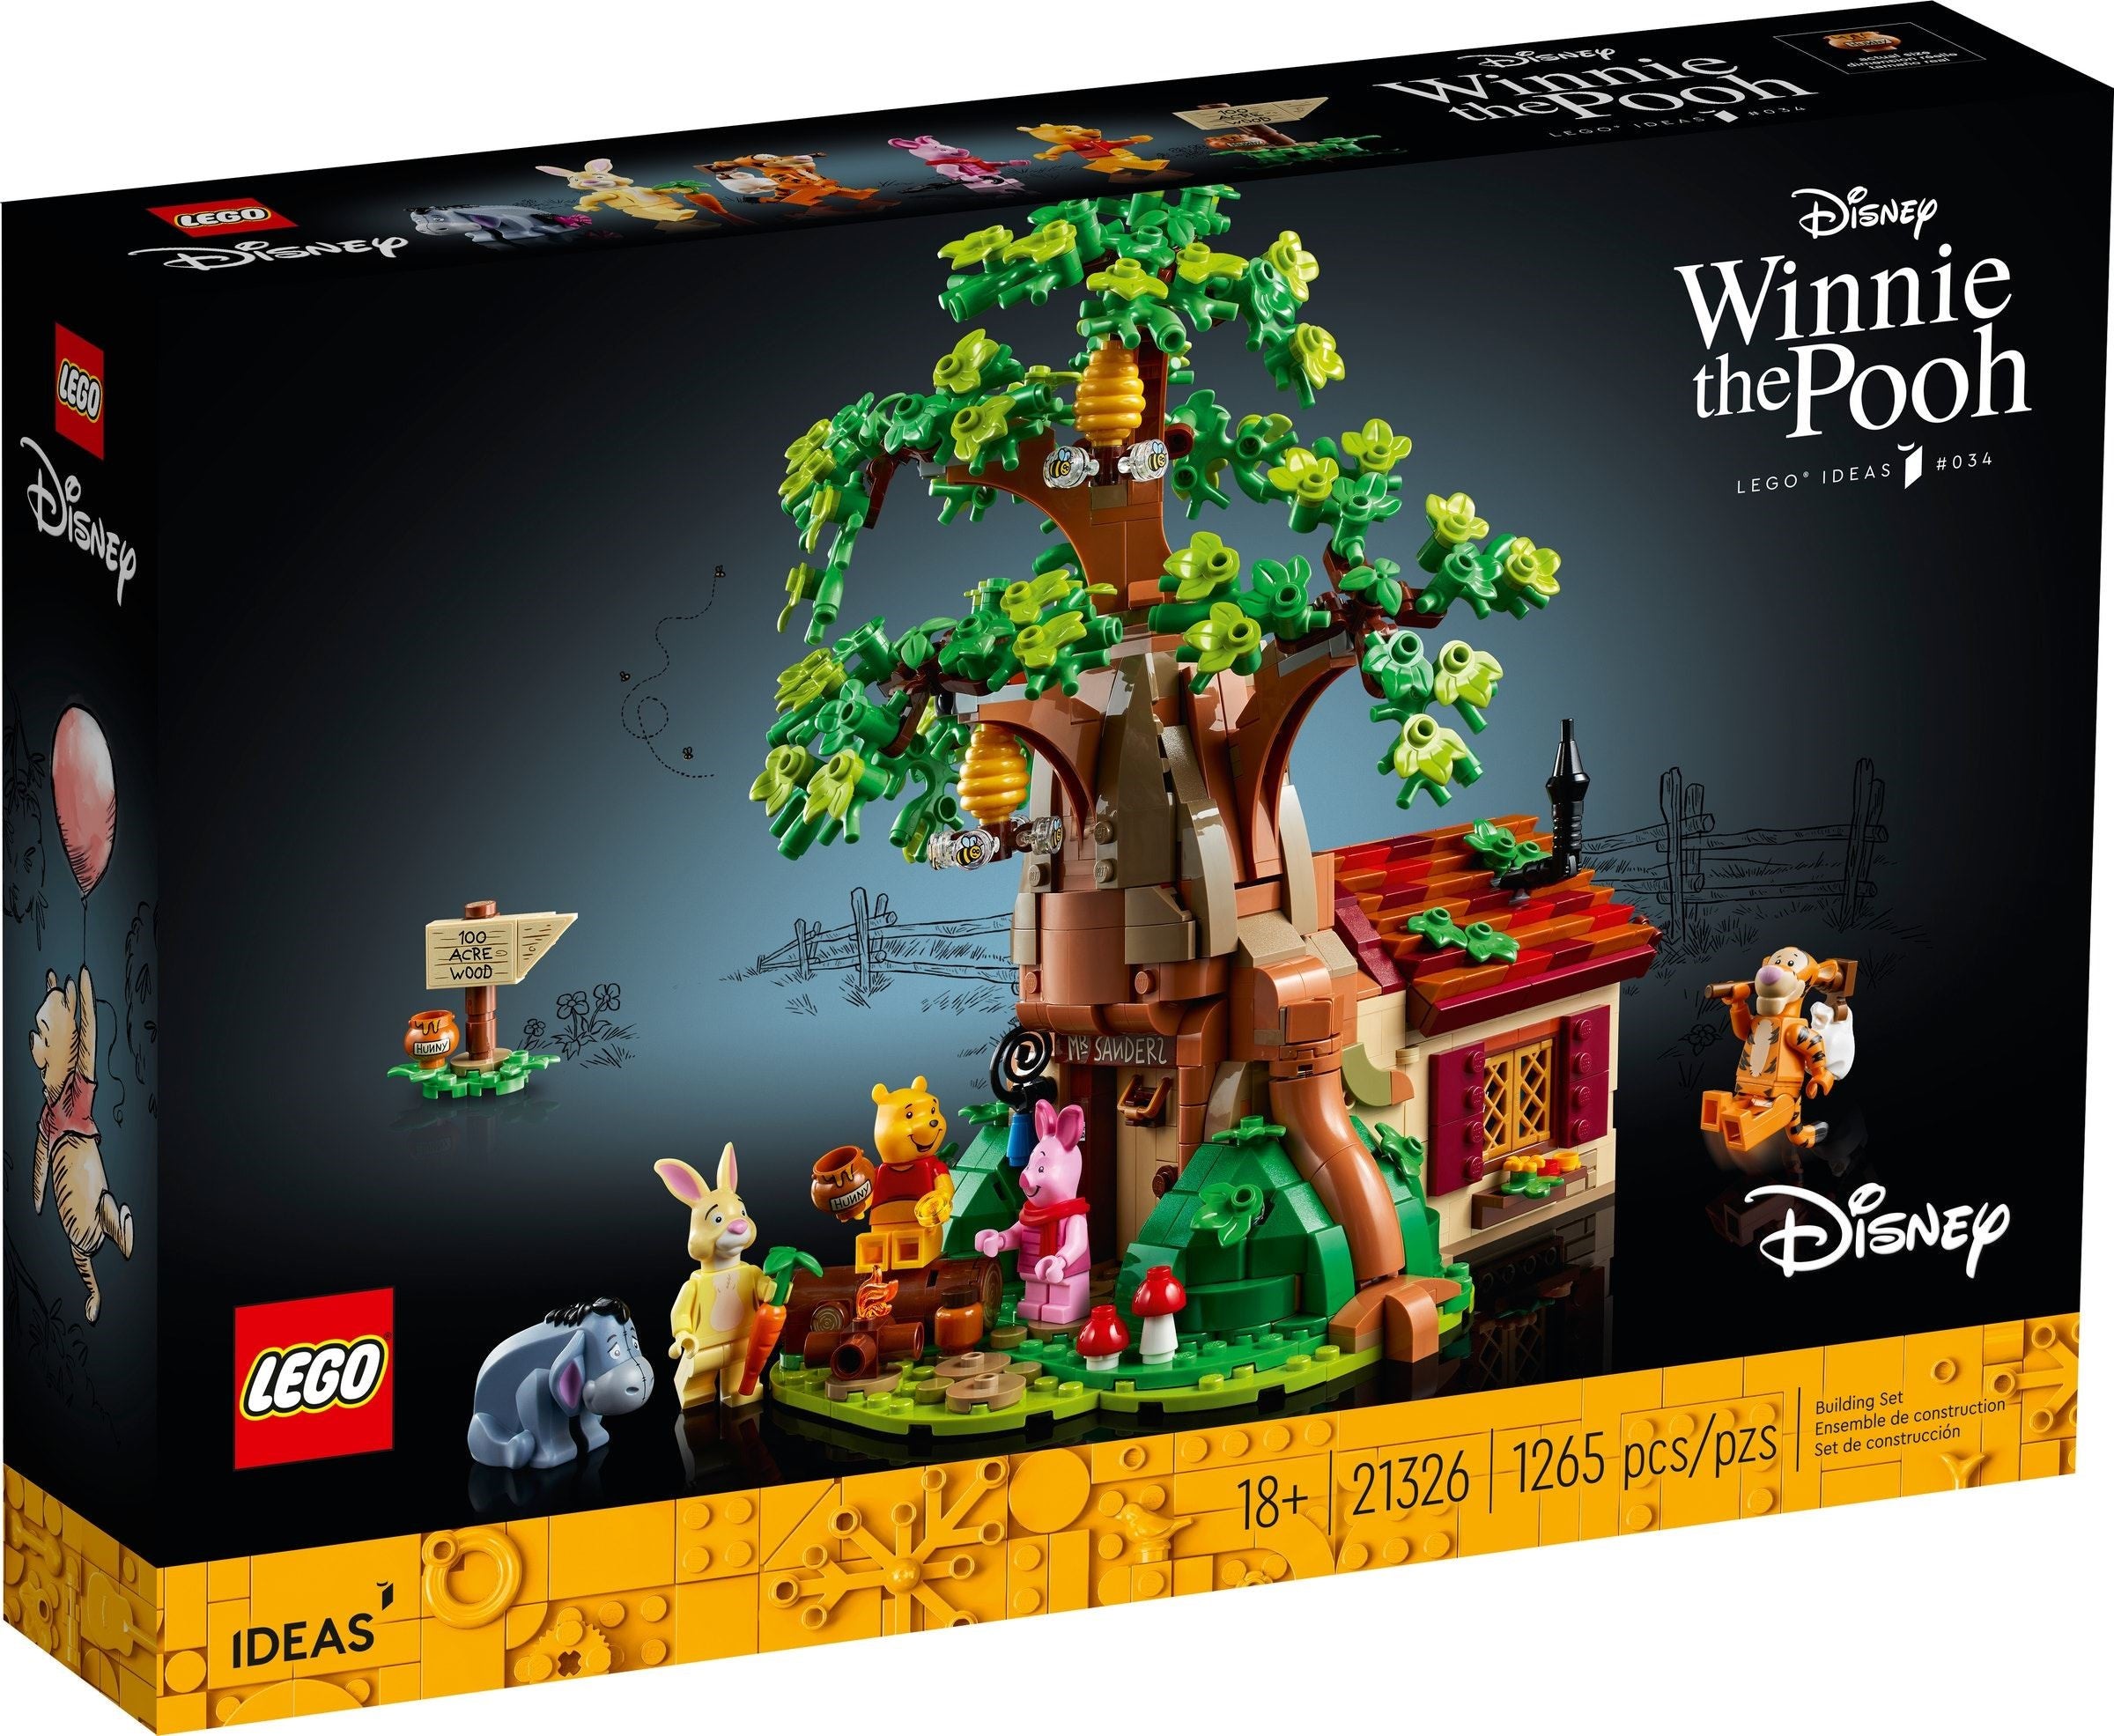 Lego Ideas 21326 - Winnie the Pooh